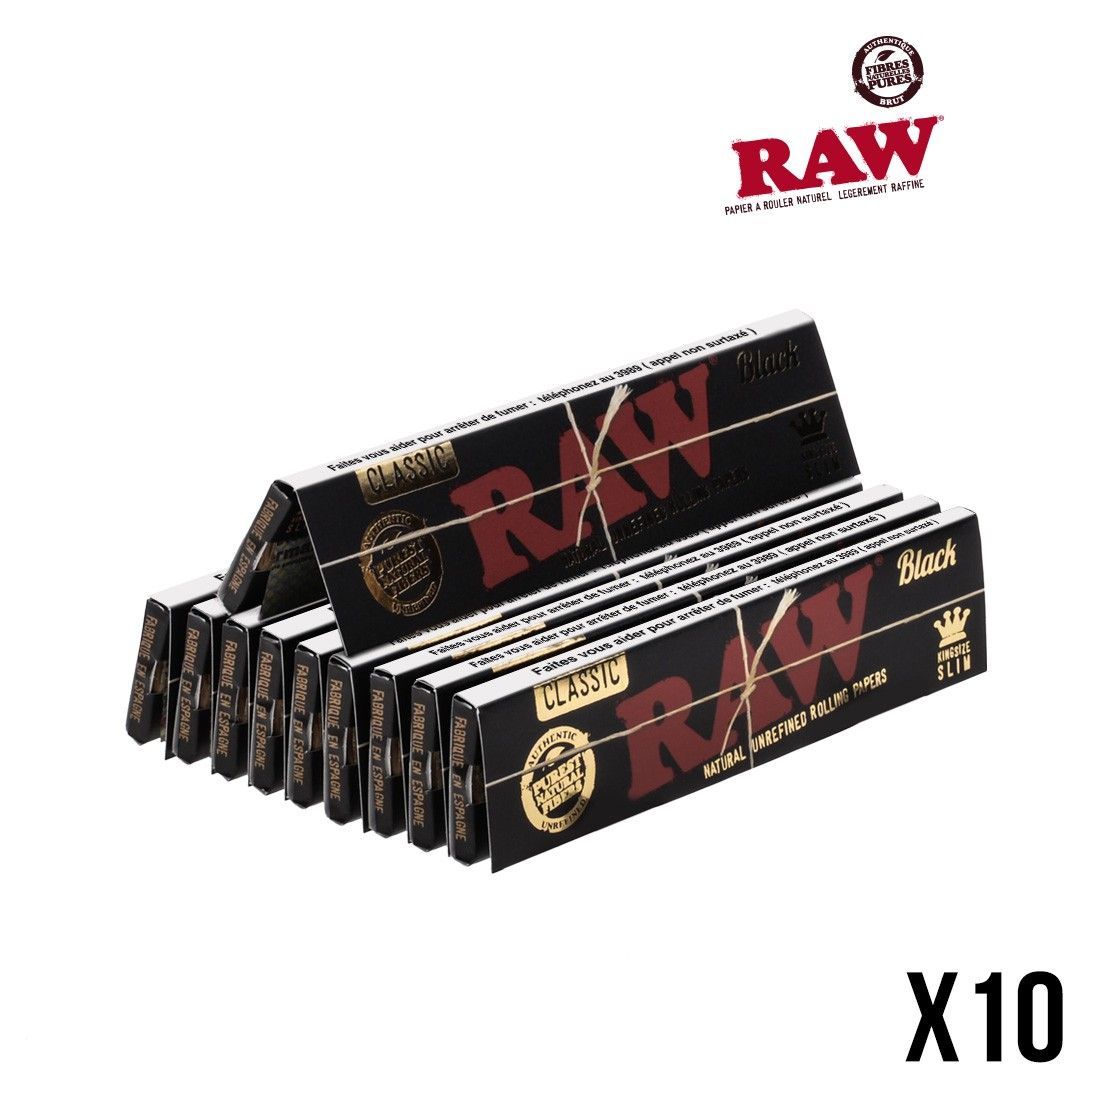 Feuilles à rouler Raw Black x10, disponibles sur S Factory !